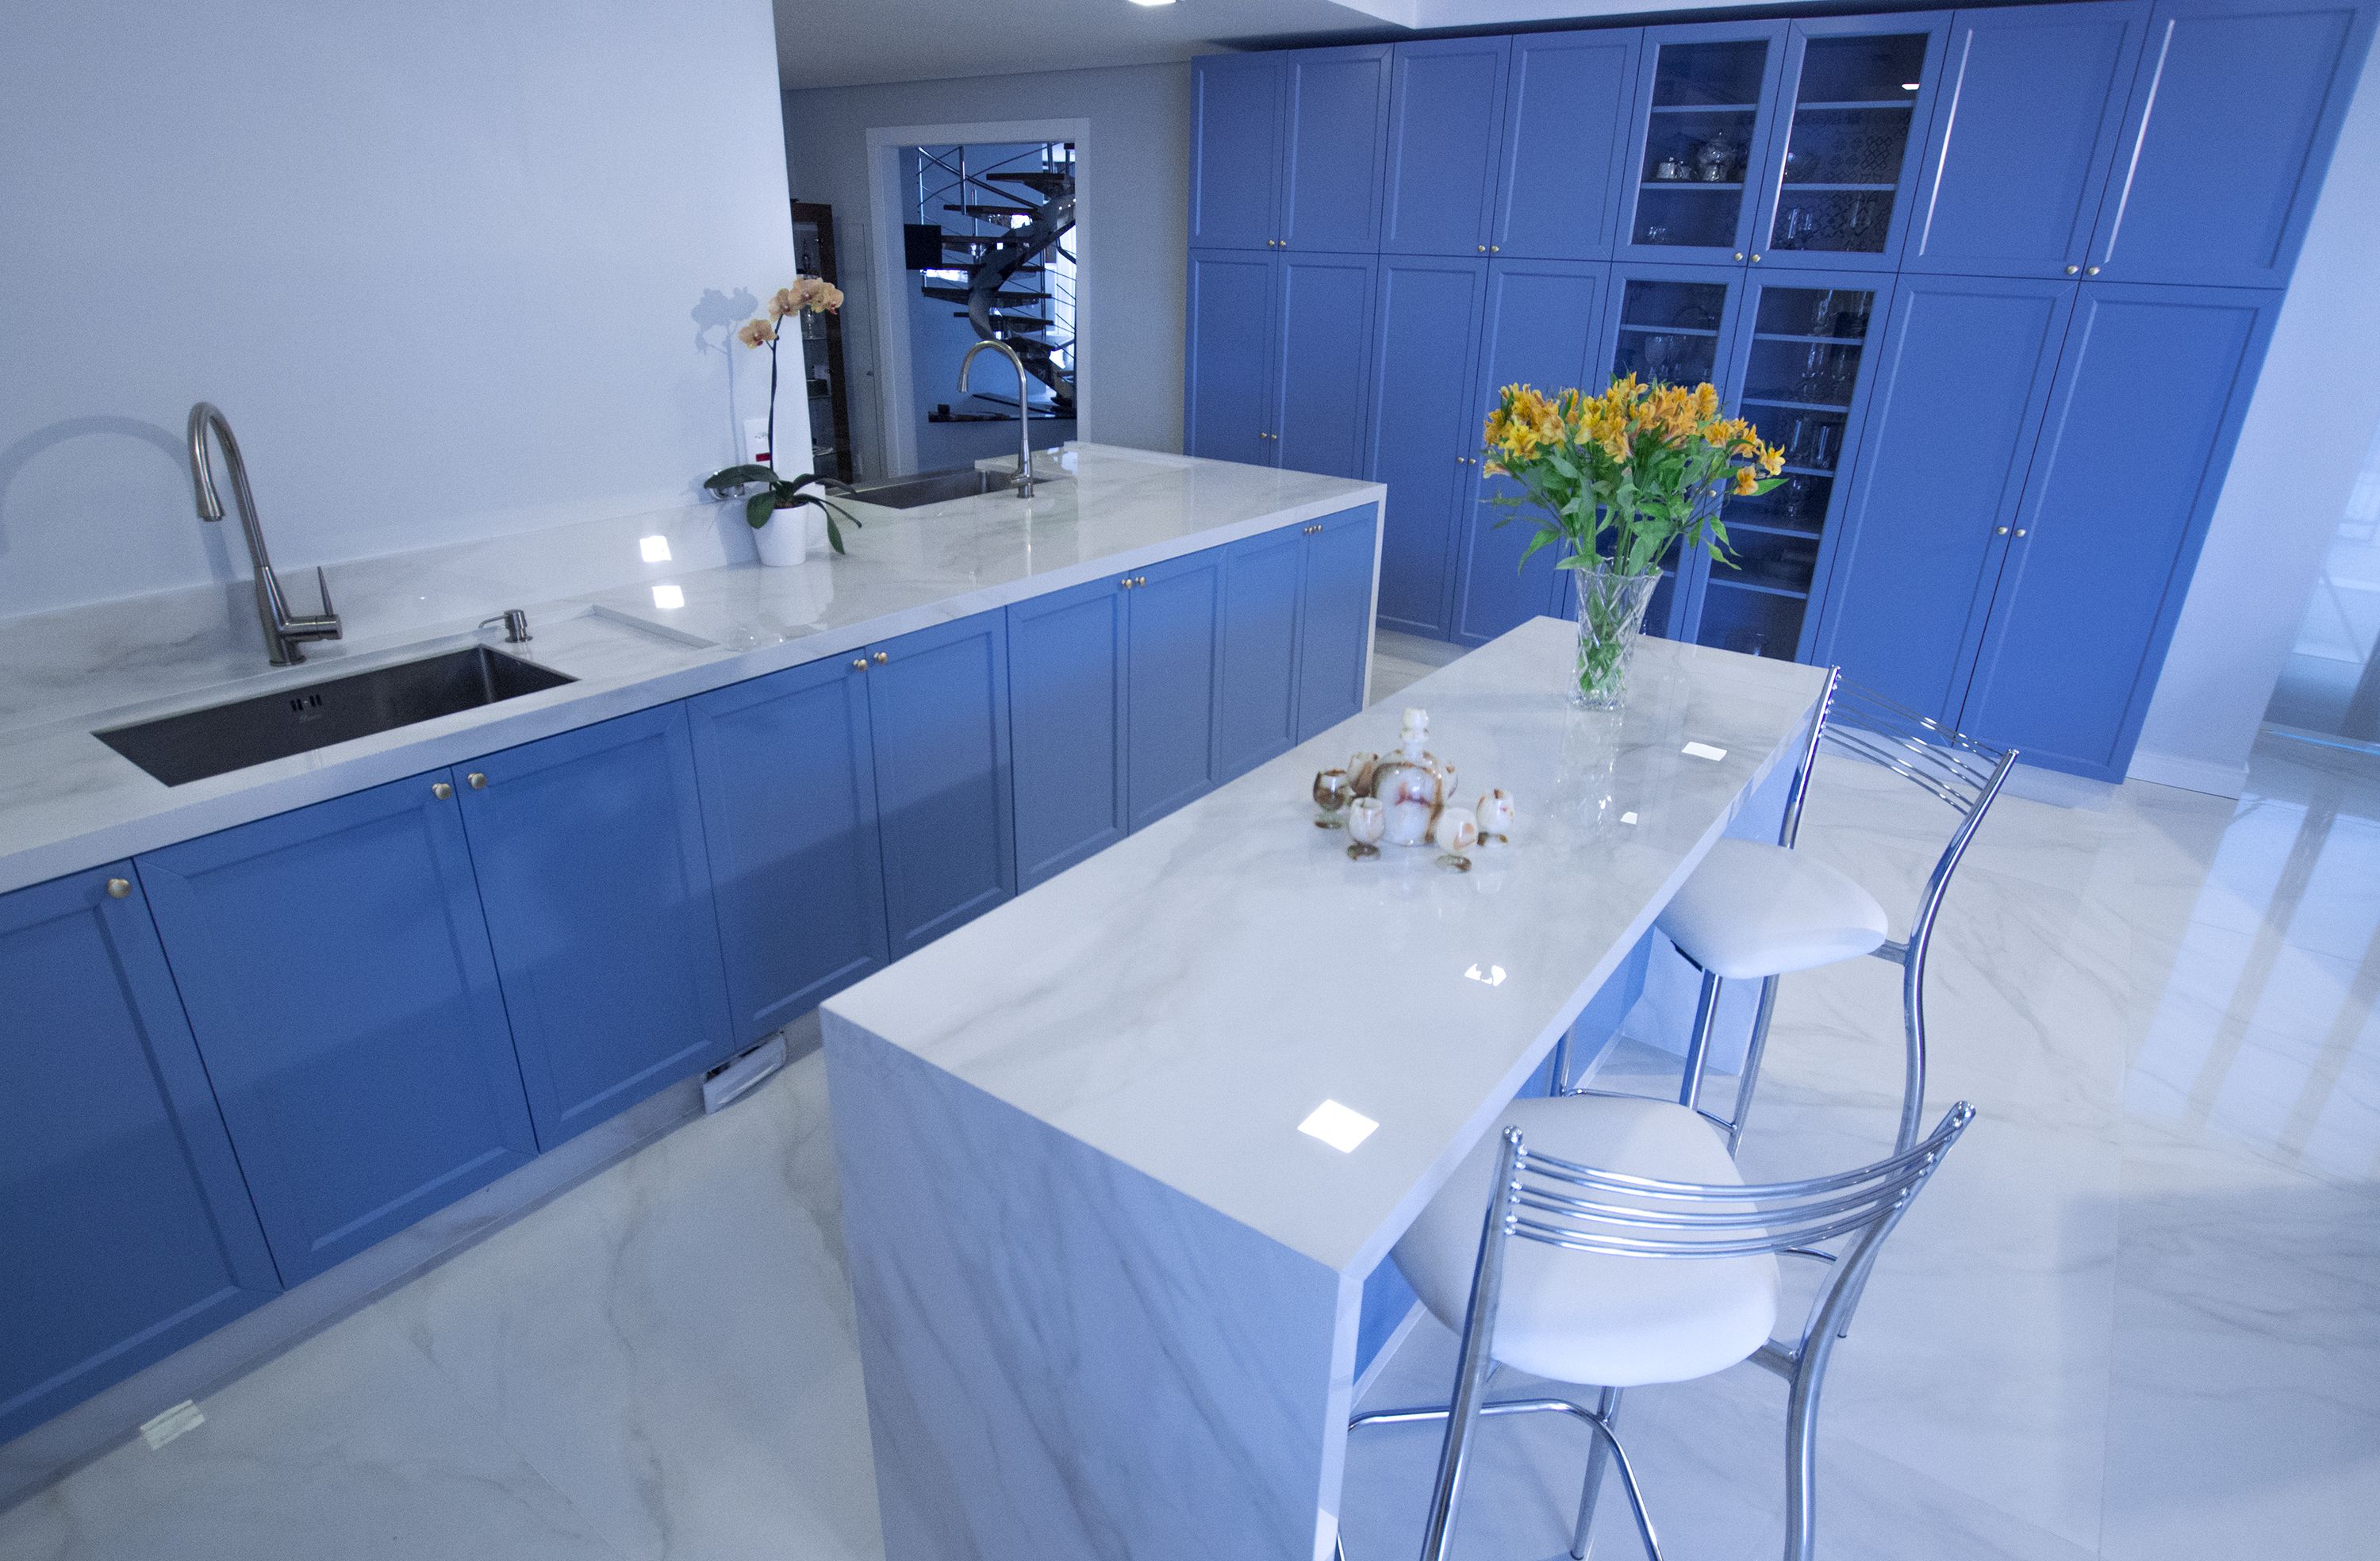 Cozinha faz um jogo entre o azul, que remete aos anos 50, e o moderno porcelanato com efeito de mármore branco